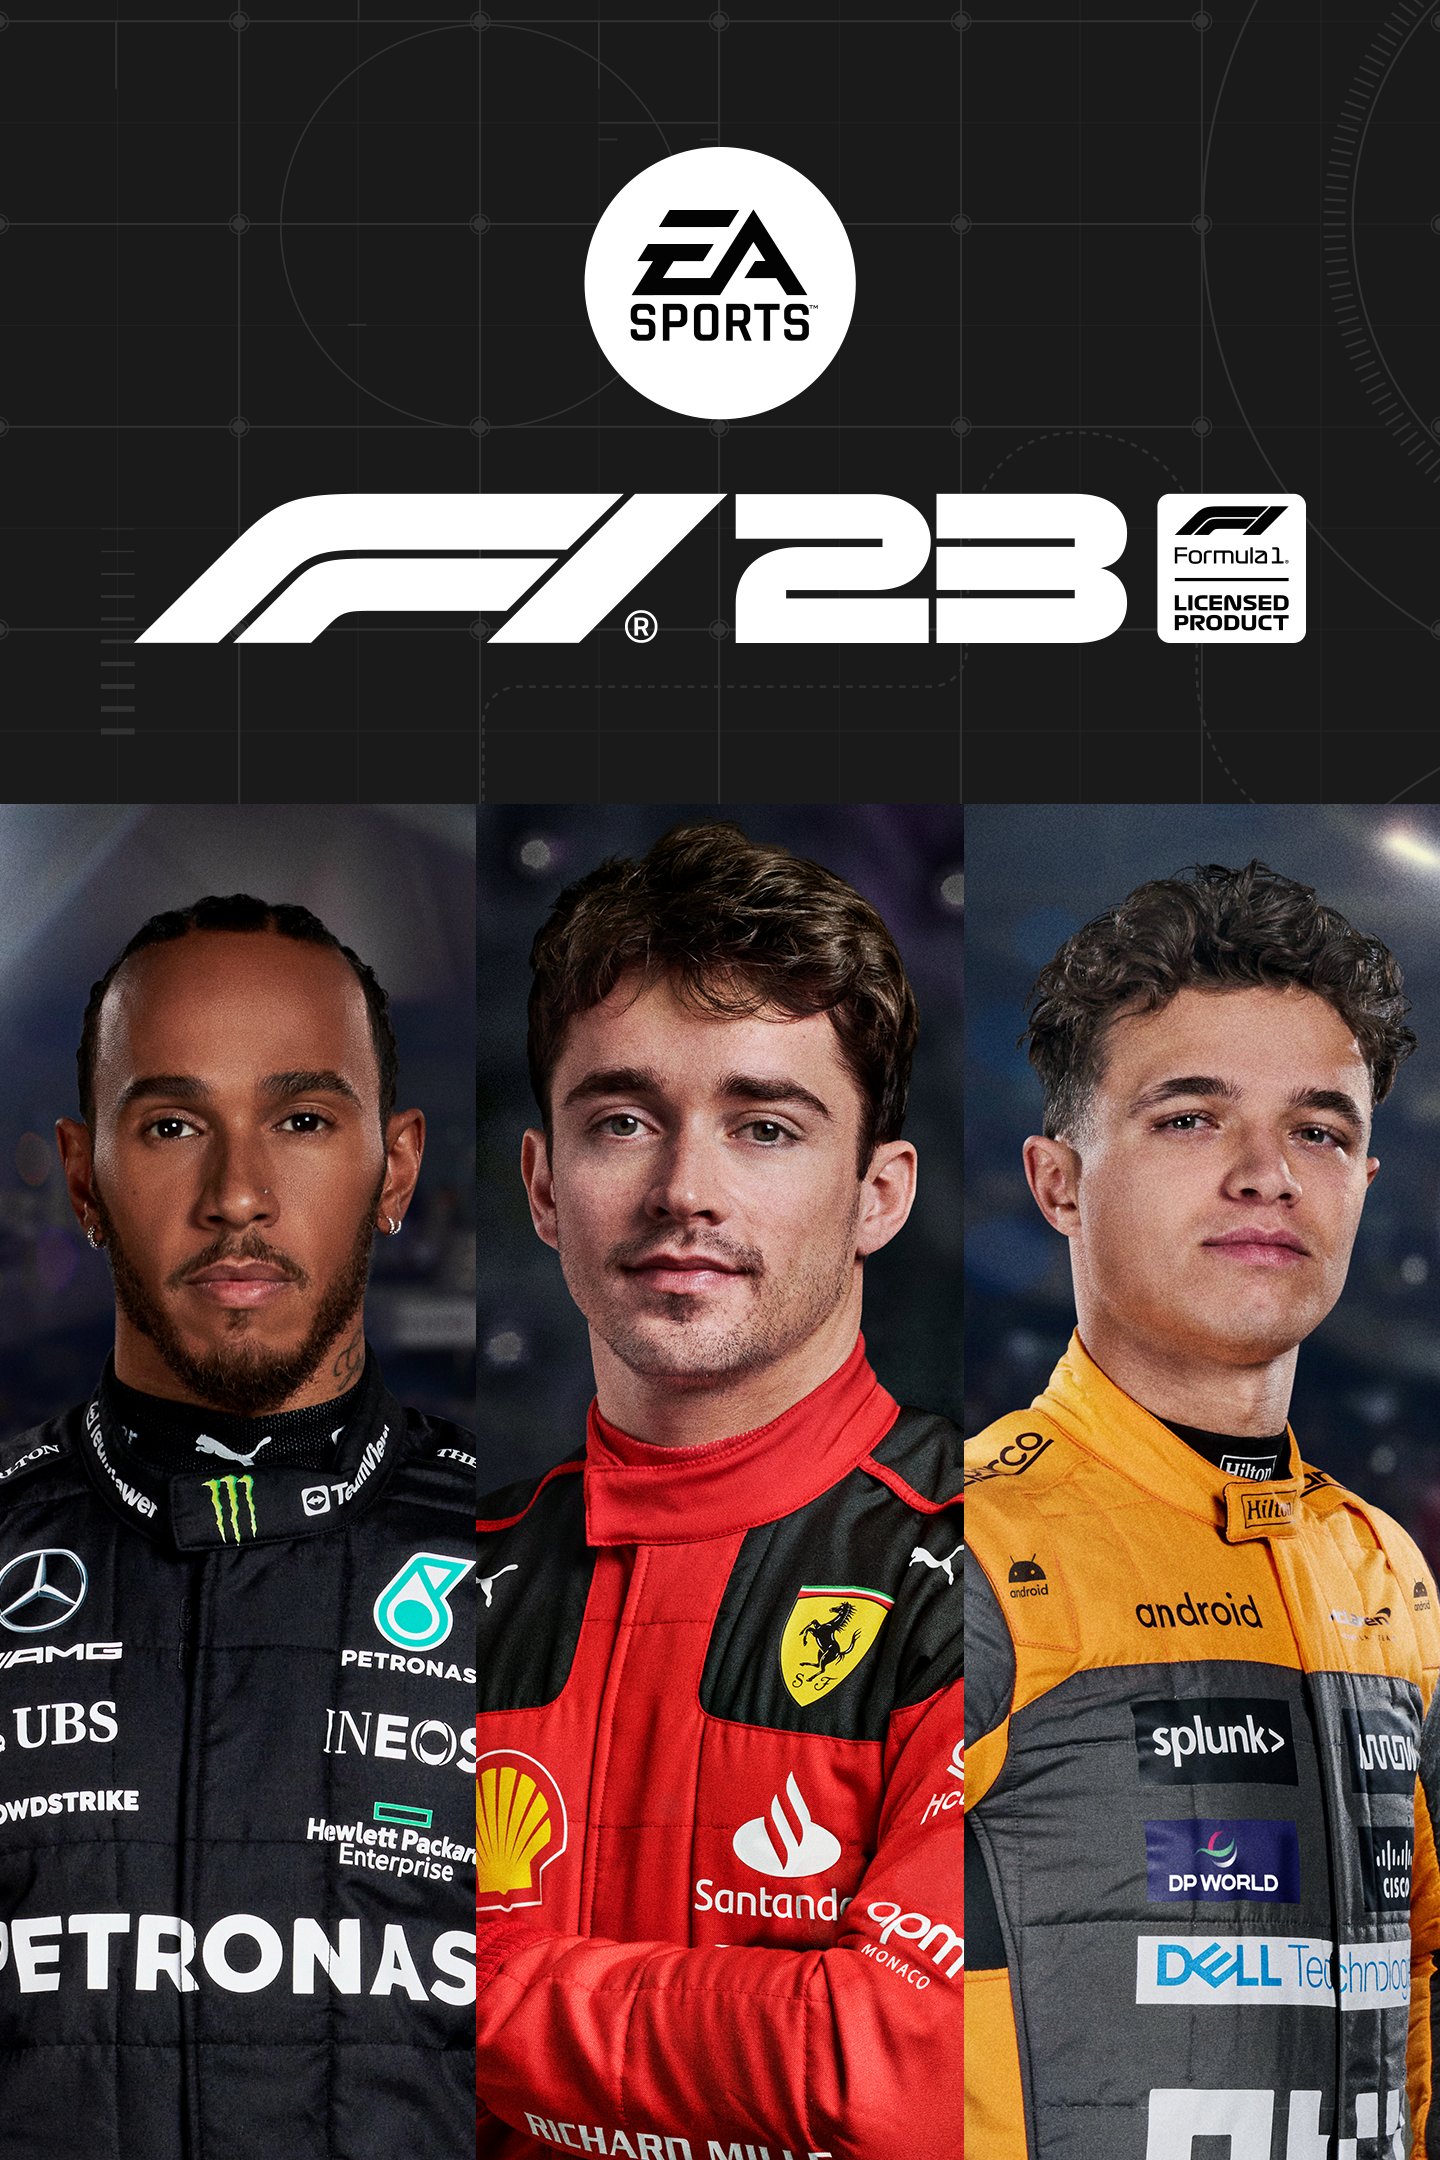 F1® 23 Champions Edition